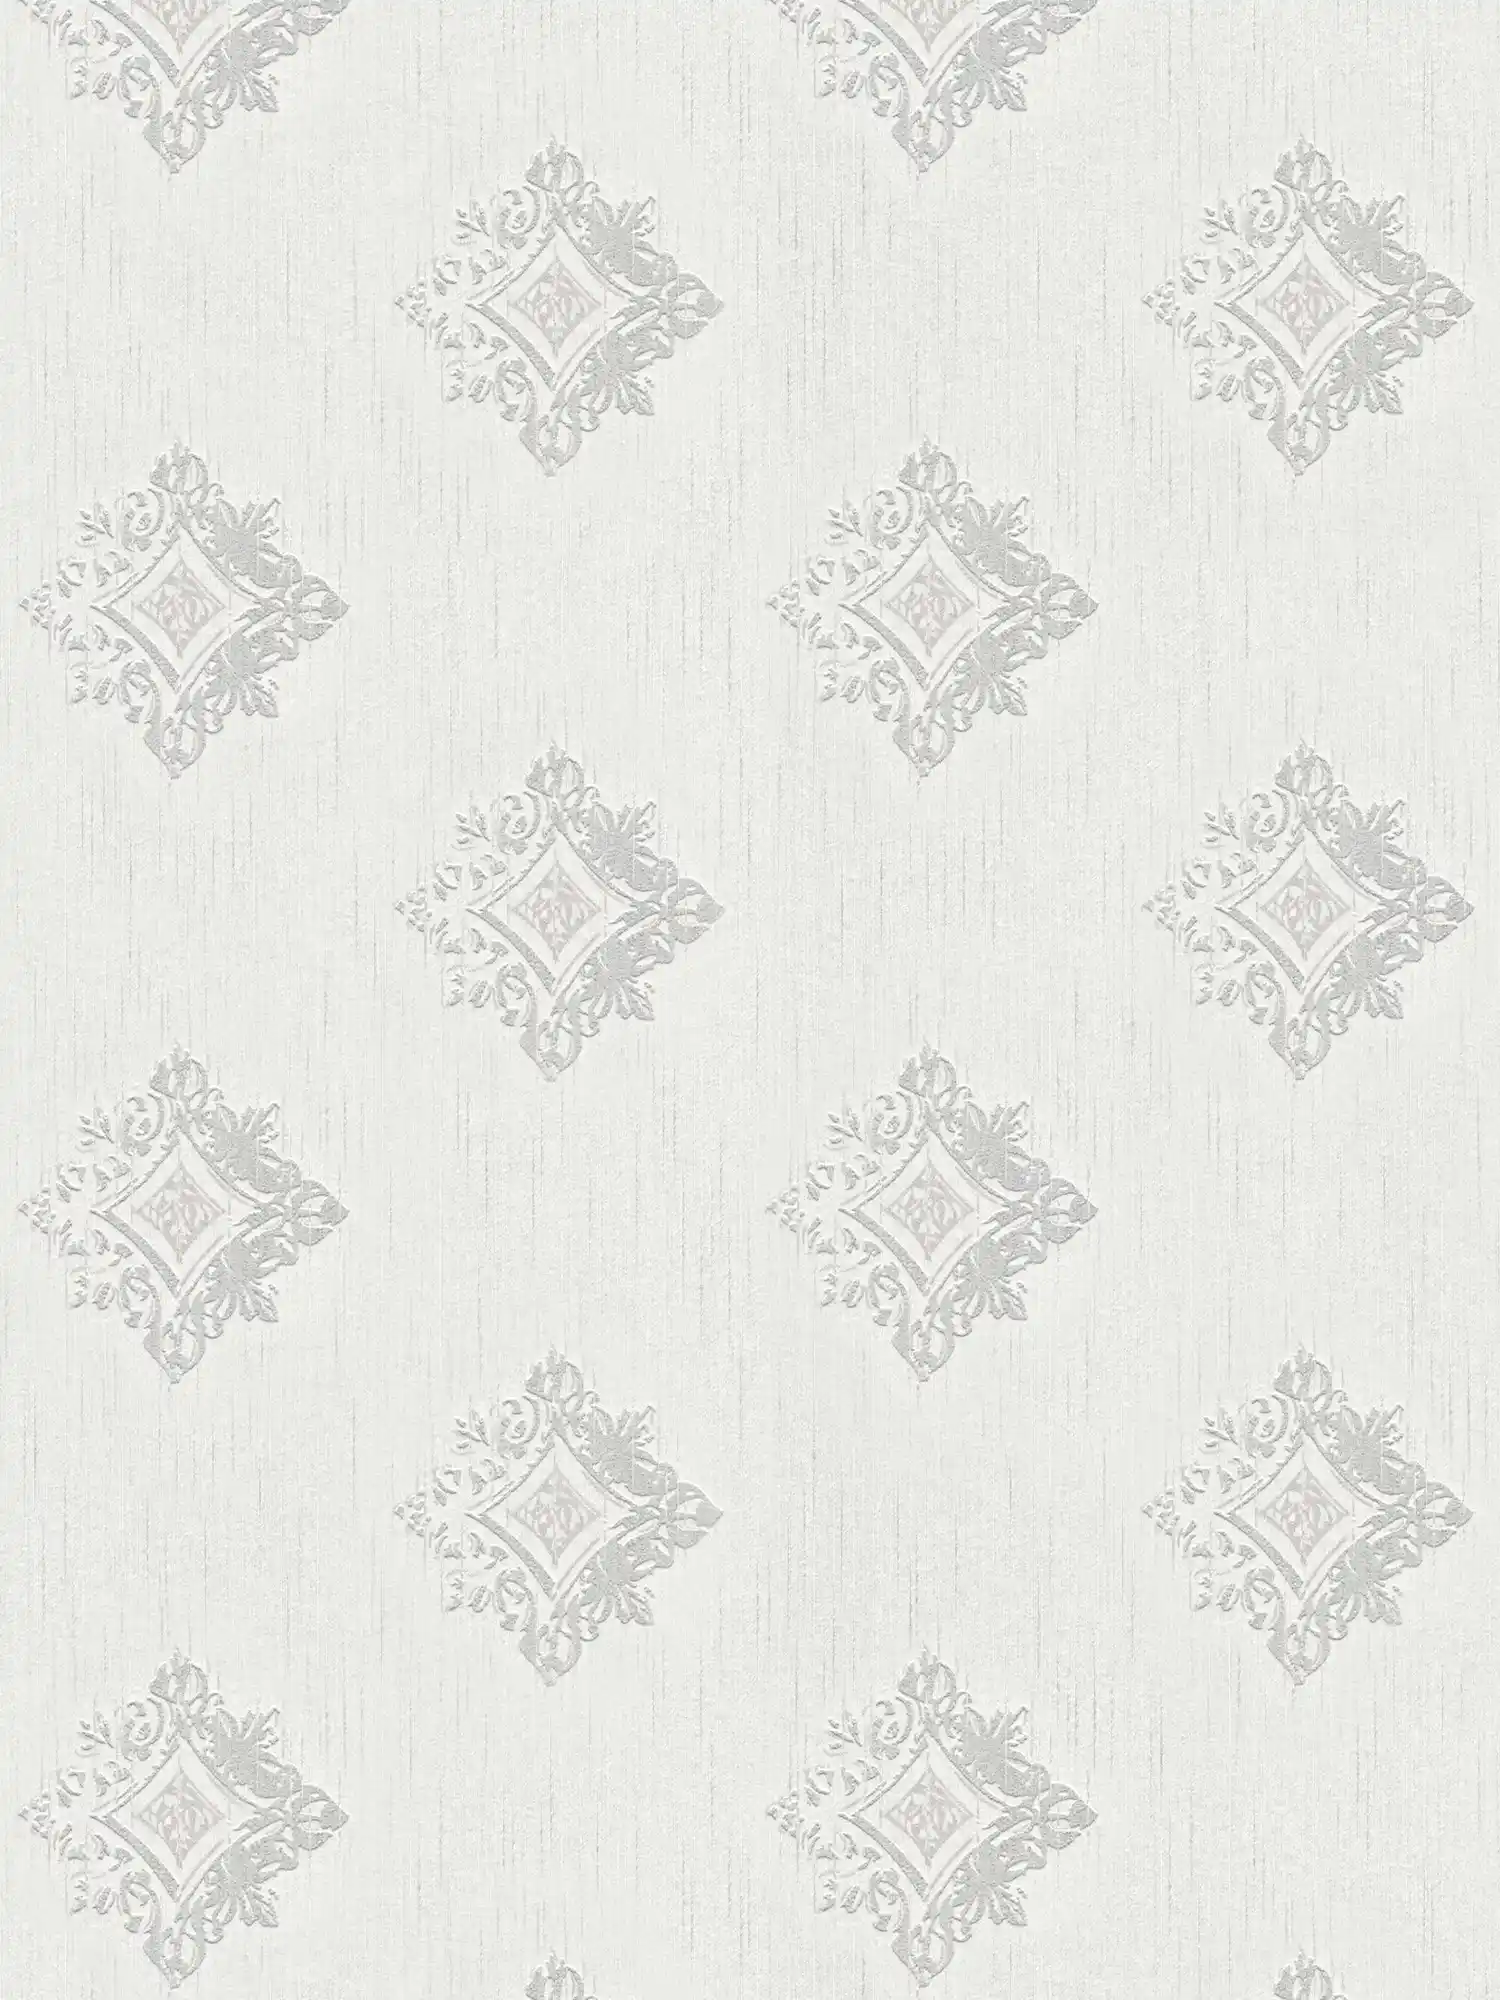 Carta da parati in tessuto non tessuto effetto intonaco con ornamenti a stucco e motivo a rombi - grigio, bianco
